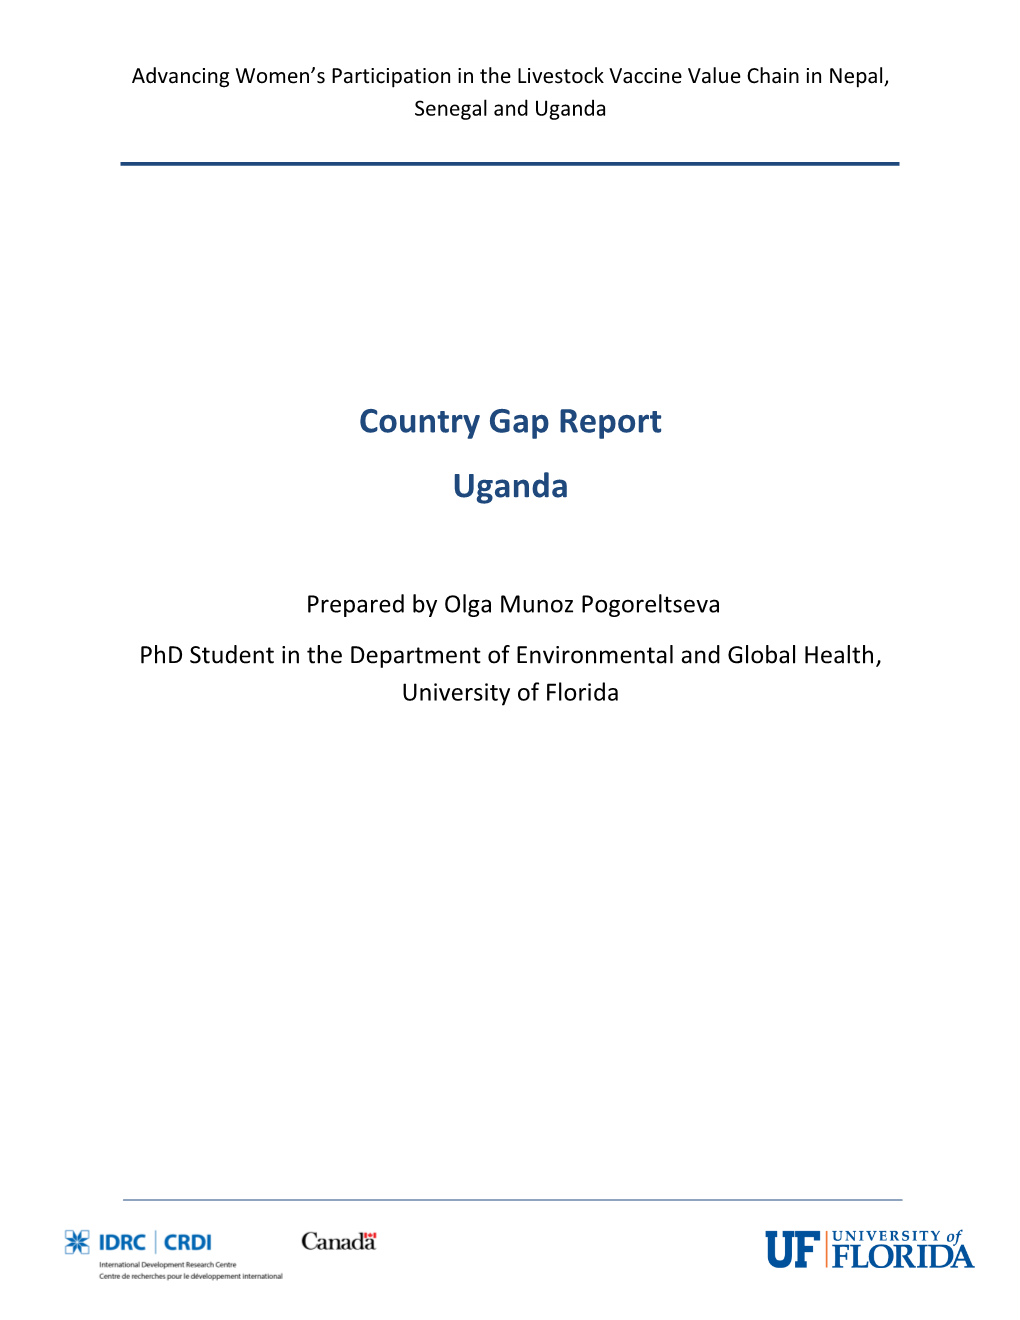 Country Gap Report Uganda